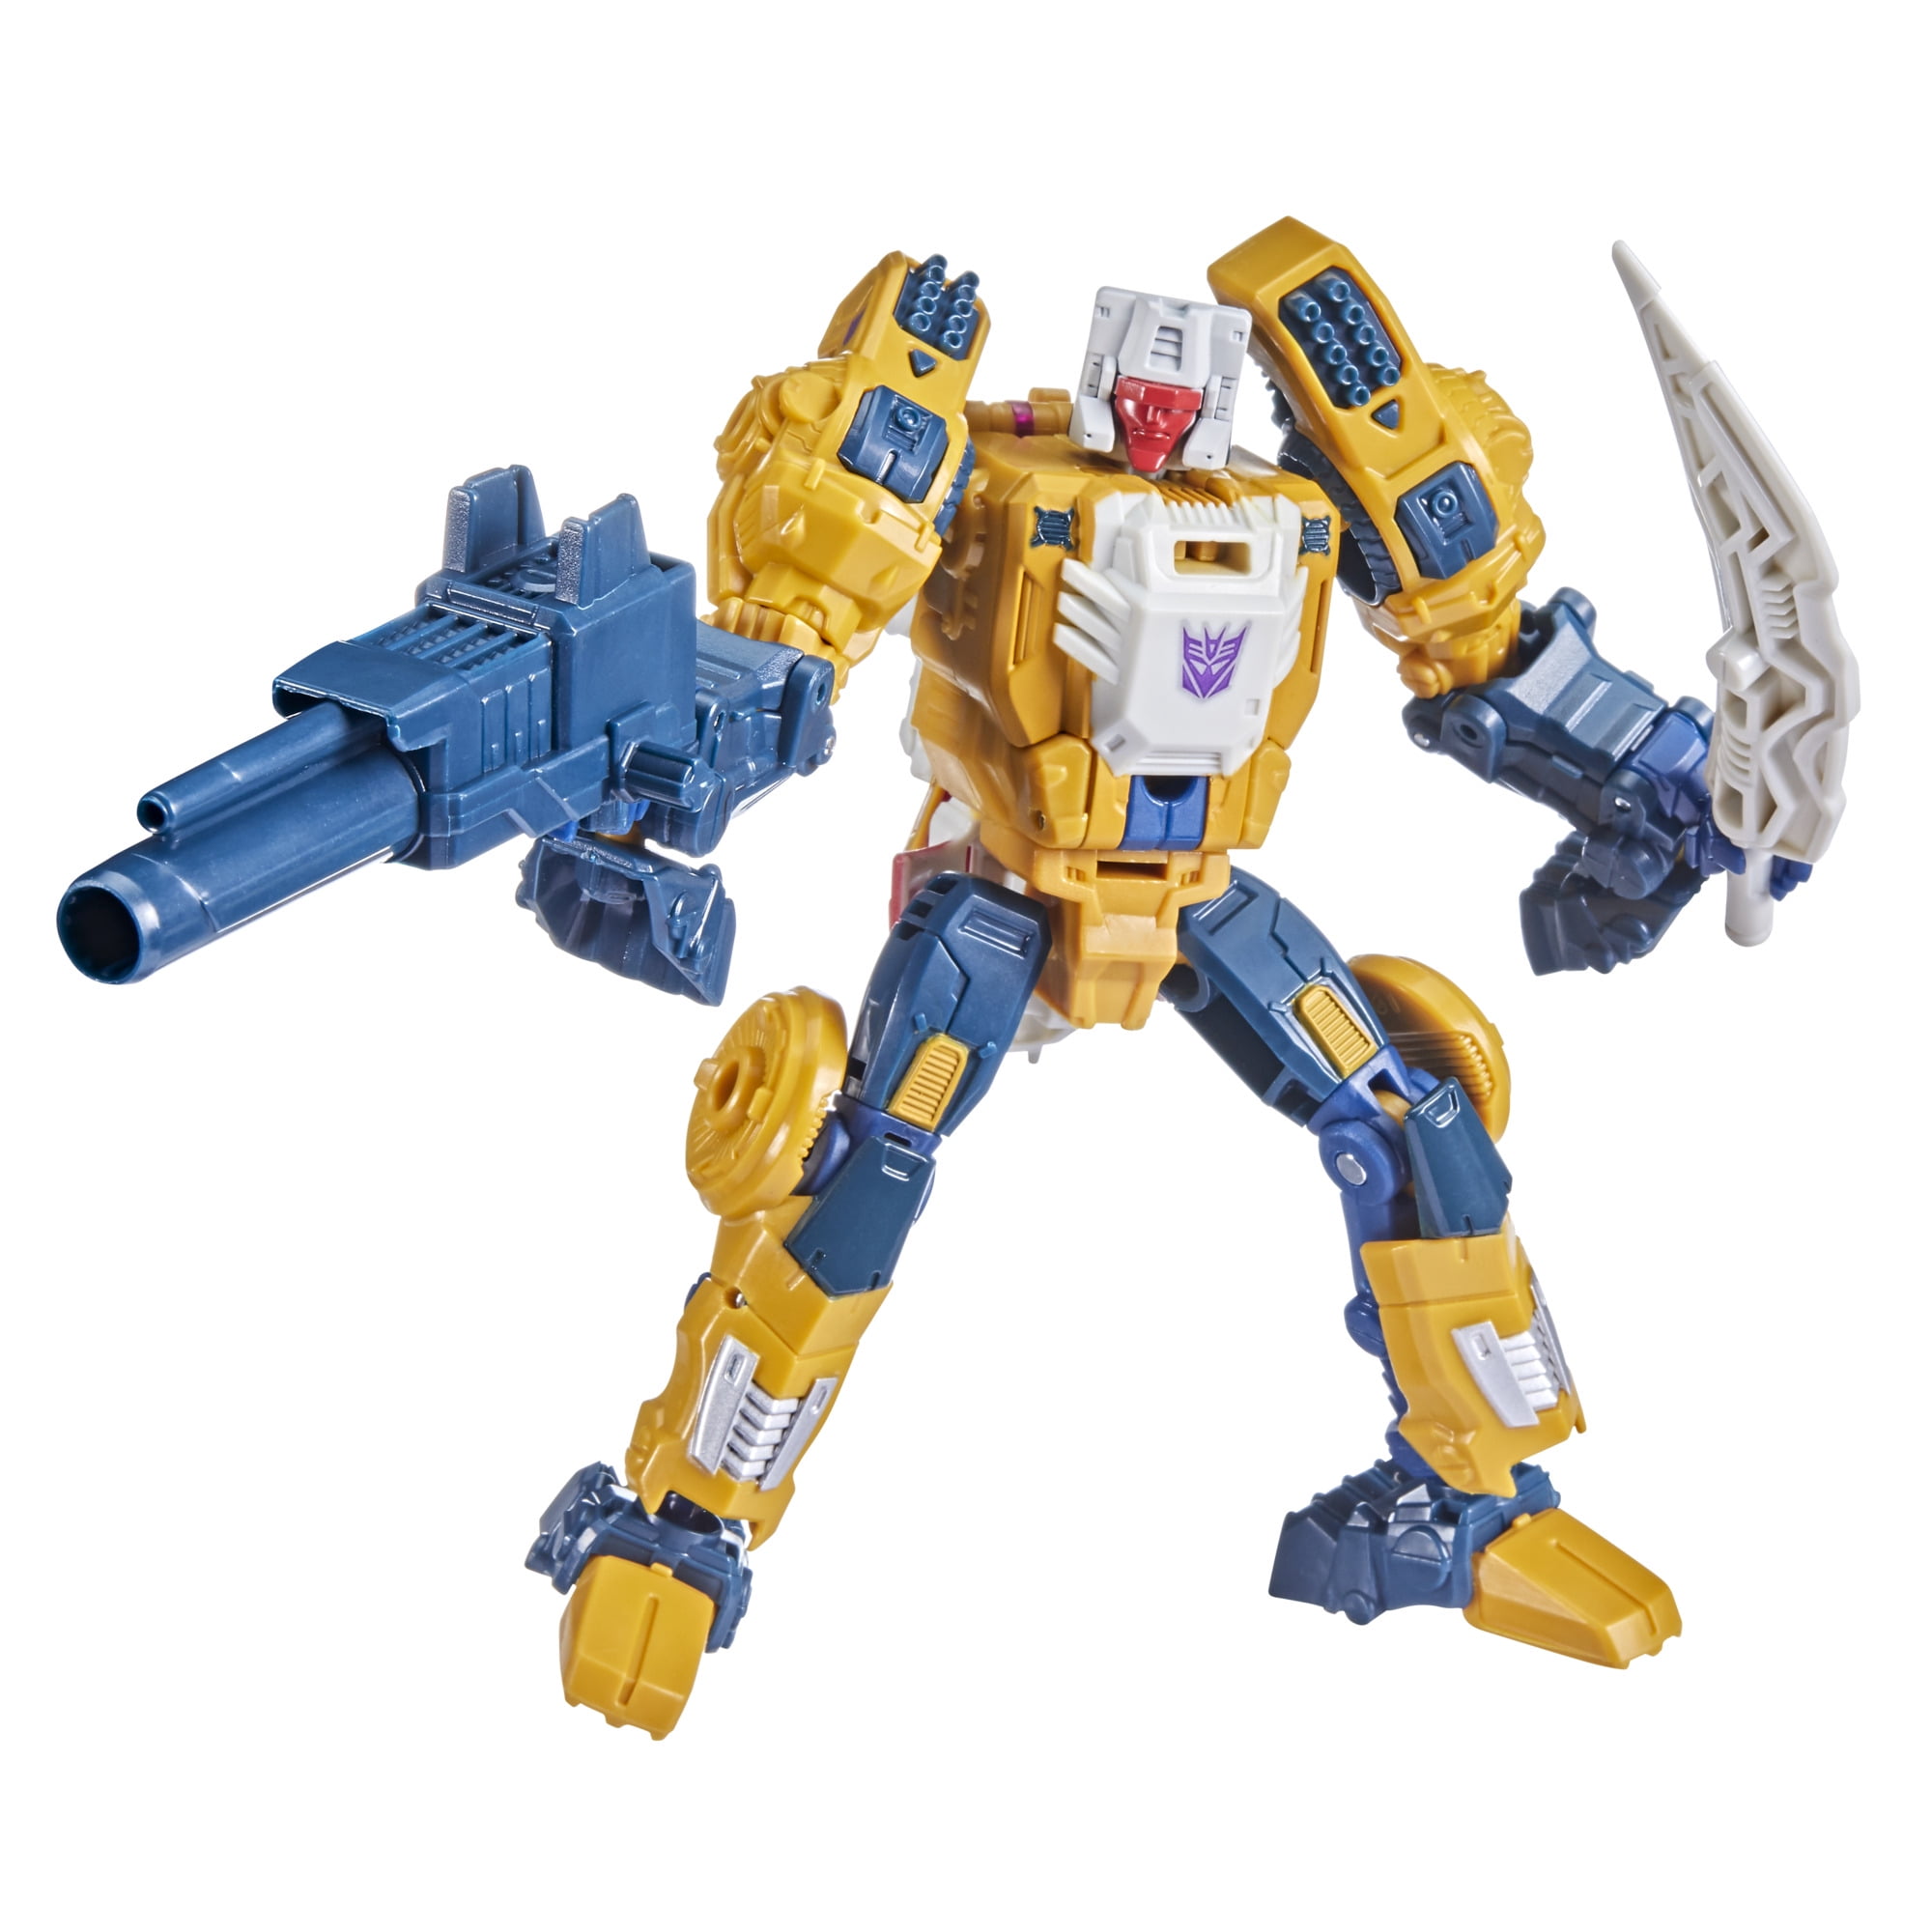 for sale online E74635L00 Hasbro Transformers Earthrise War for Cybertron Deluxe Bluestreak Action Figure 